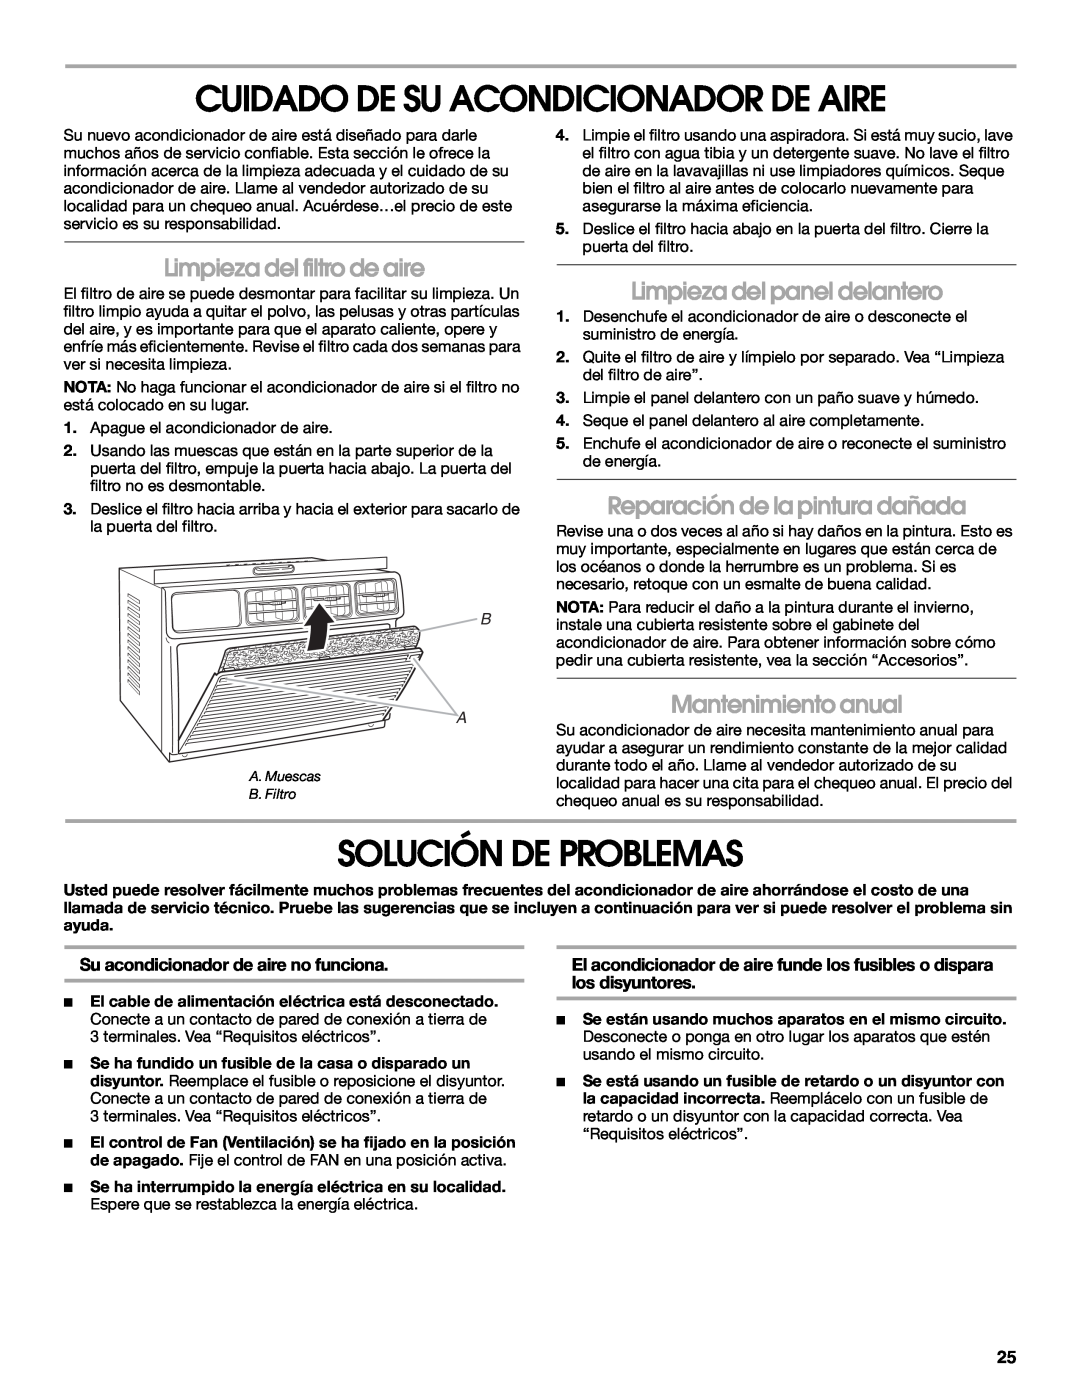 Whirlpool ACE082XP1 manual Cuidado De Su Acondicionador De Aire, Solución De Problemas, Limpieza del filtro de aire 